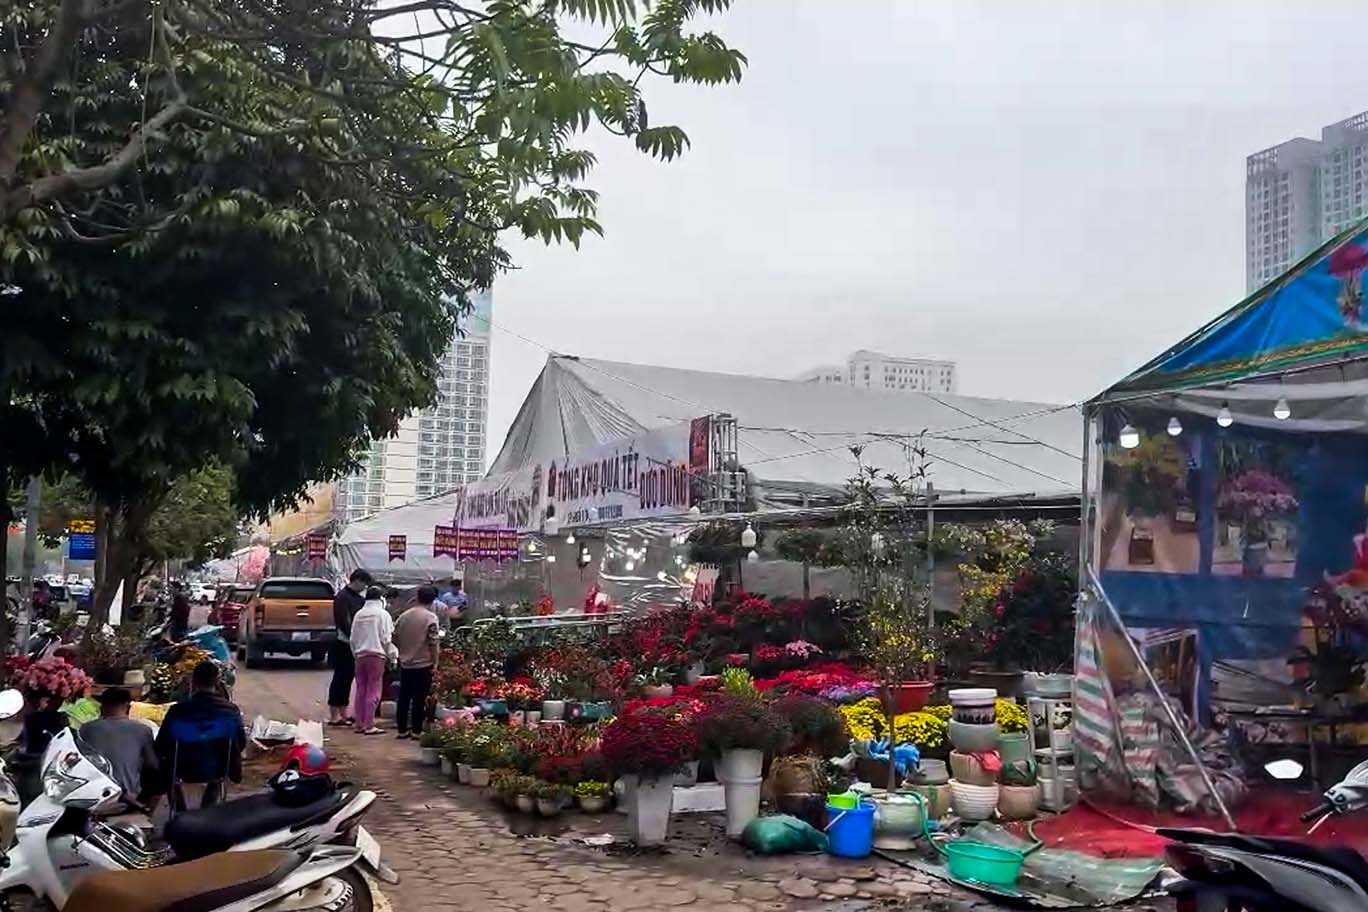 Khu vực chợ hoa xuân tại ô đất E5 đường Dương Đình Nghệ. Ảnh: Nhóm PV.